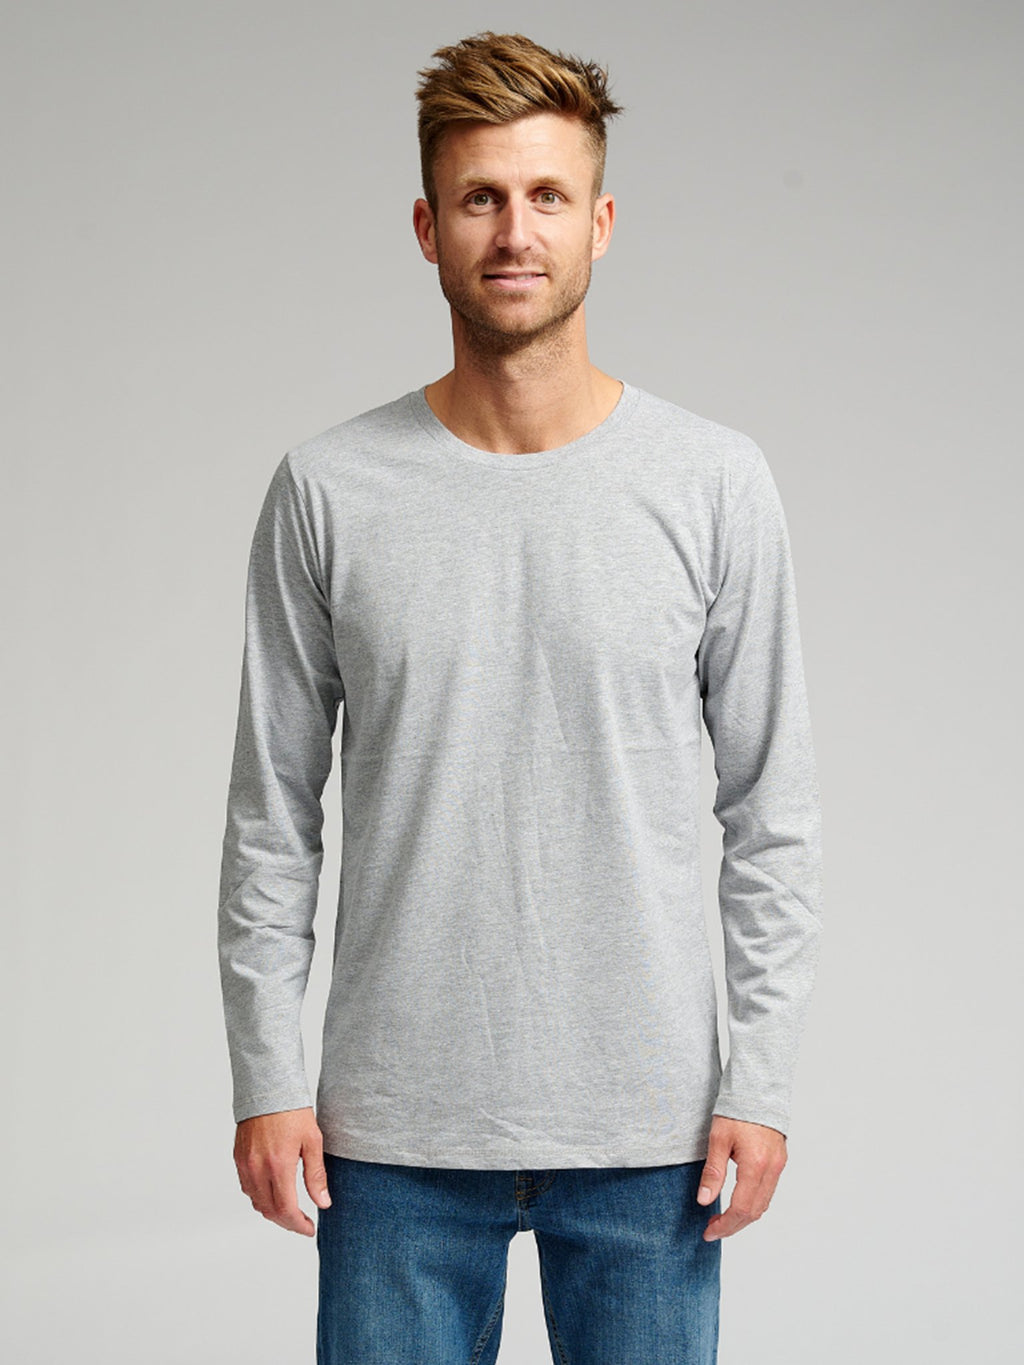 Basic T-shirt à manches longues - Offre groupée (9 pièces)